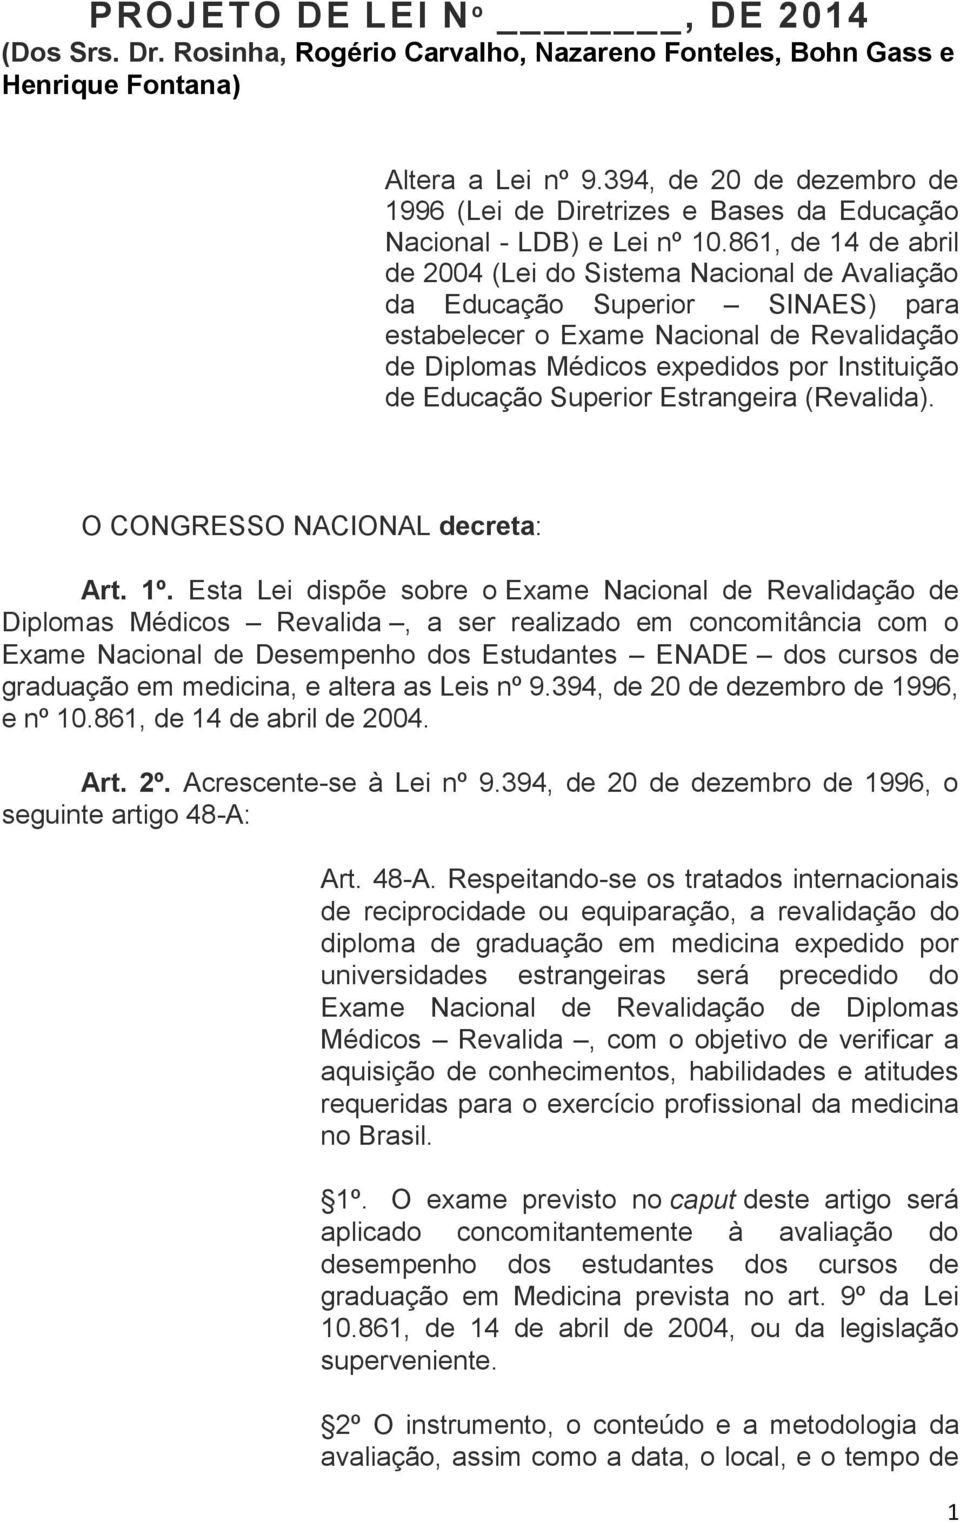 861, de 14 de abril de 2004 (Lei do Sistema Nacional de Avaliação da Educação Superior SINAES) para estabelecer o Exame Nacional de Revalidação de Diplomas Médicos expedidos por Instituição de